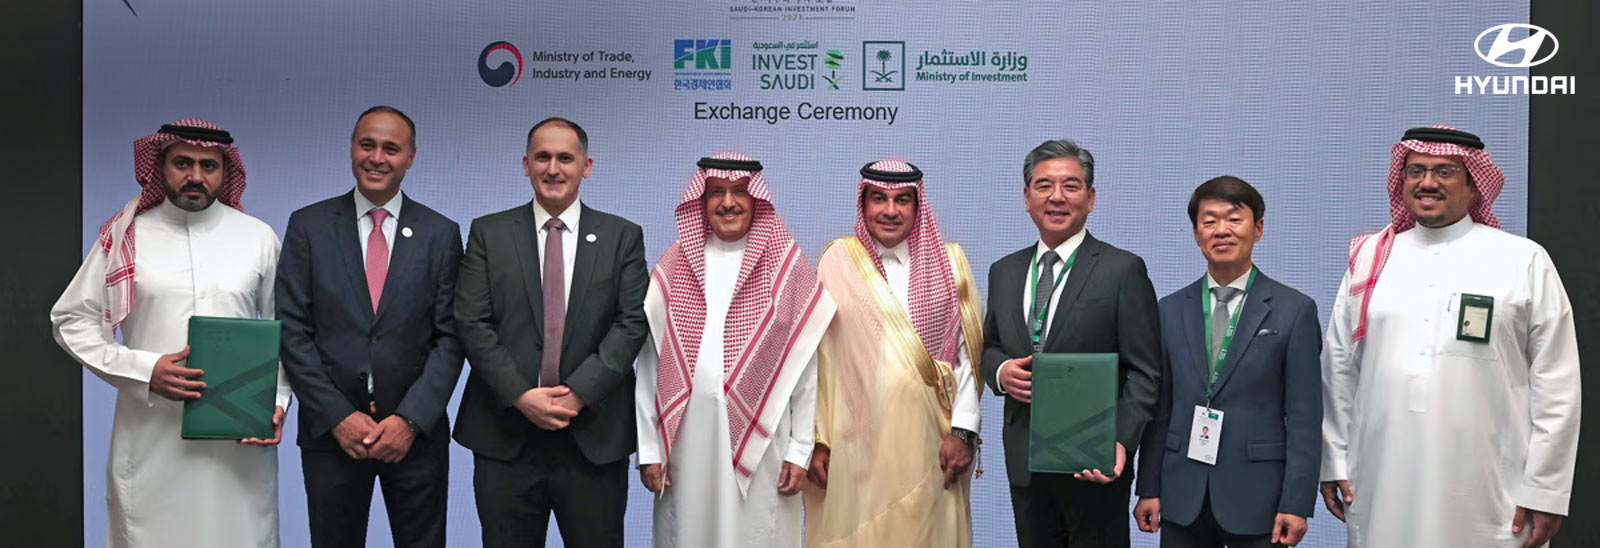 Ejecutivos de Hyundai Motor Group y Arabia Saudita en fotografía tras firma de acuerdo